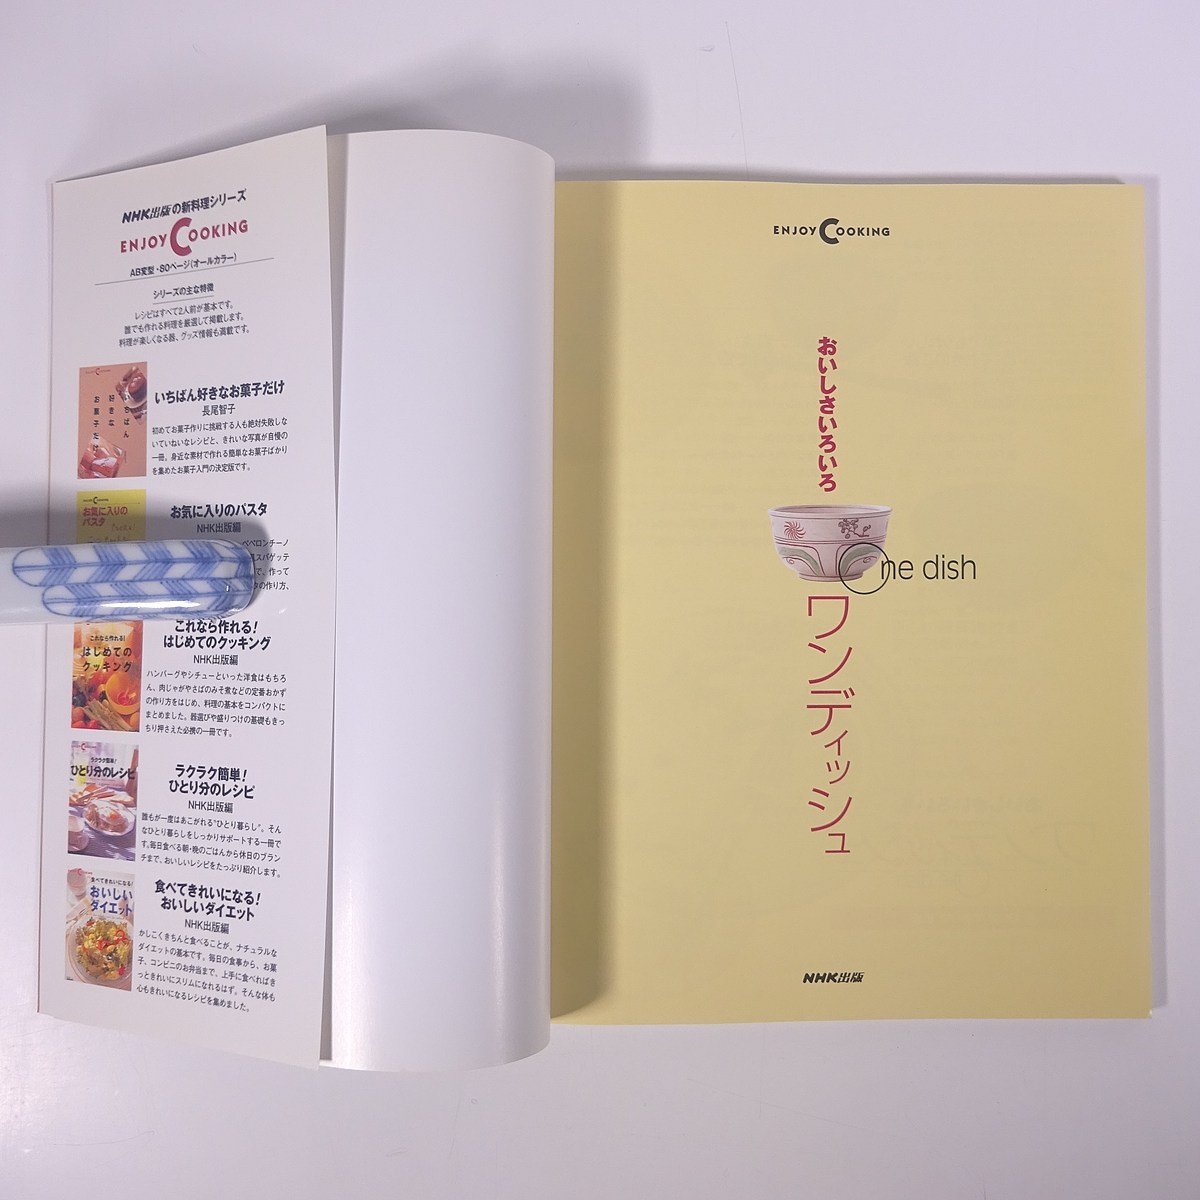 おいしさいろいろ ワンディッシュ ENJOY COOKING NHK出版 日本放送出版協会 1999 大型本 料理 献立 レシピ 家庭料理 ご飯 ごはん 麺 めん_画像5